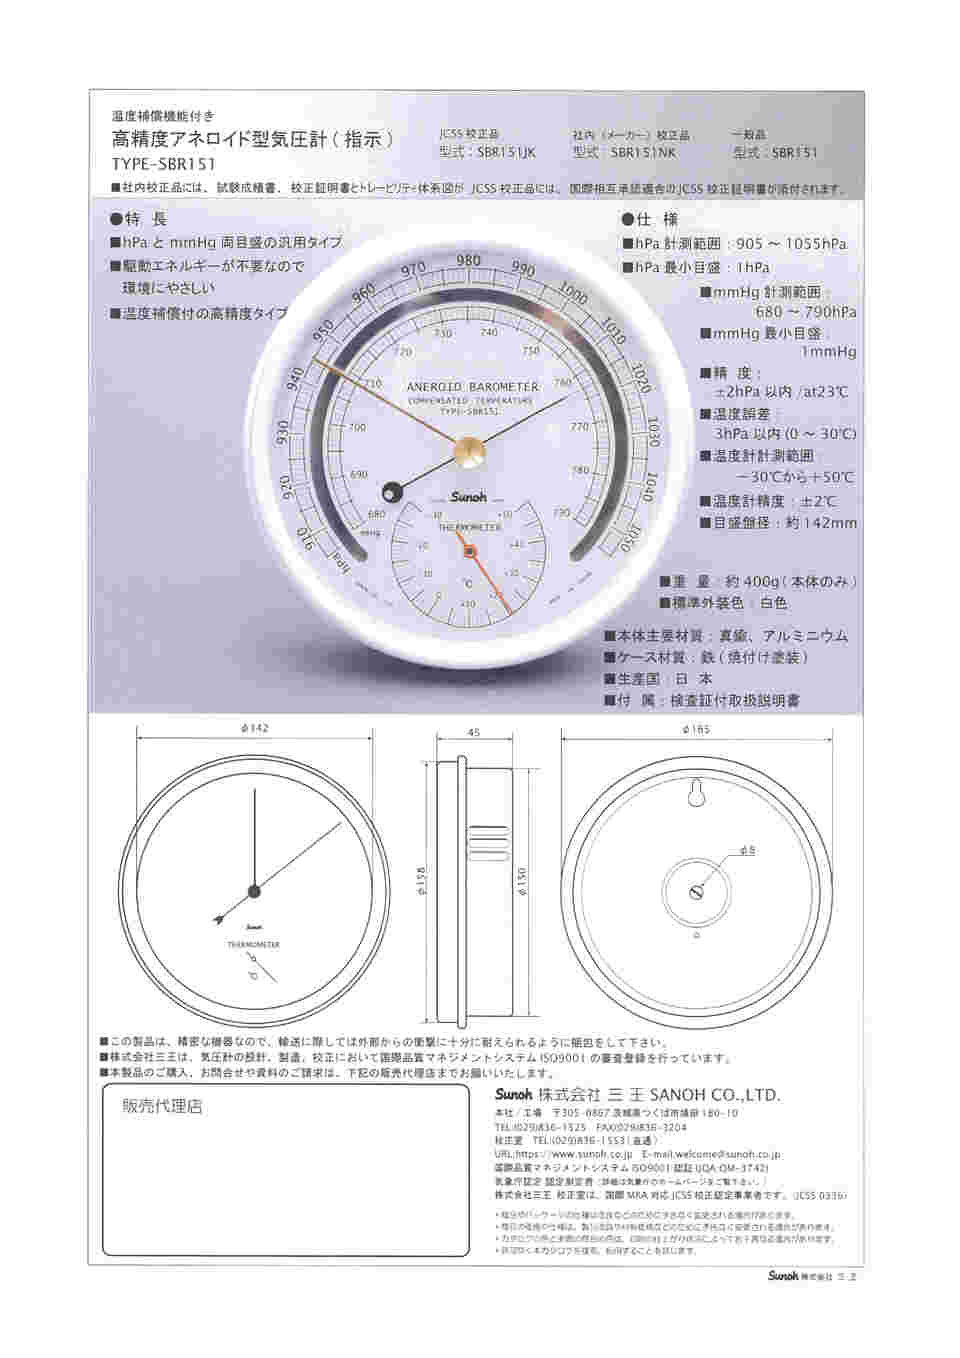 64-7814-15 高精度アネロイド型気圧計(汎用タイプ) TYPE SBR-151 JK